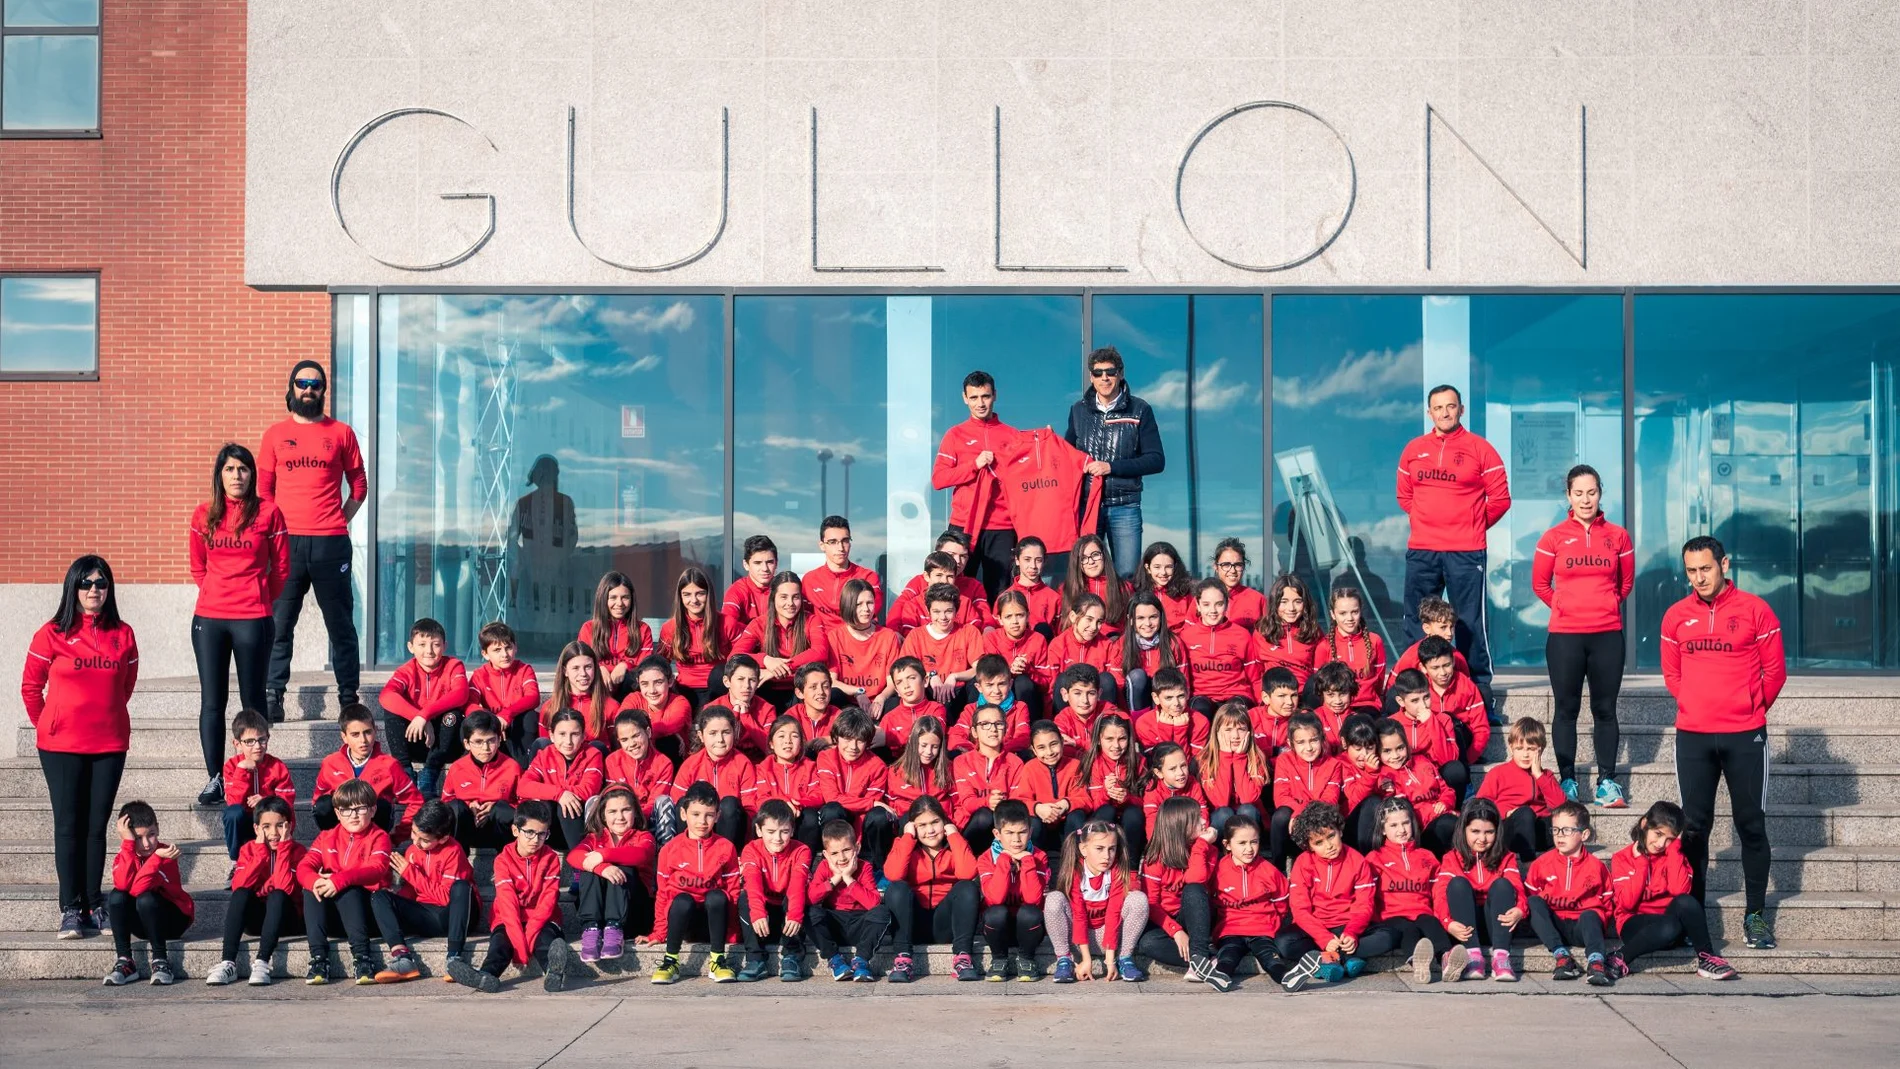 La Escuela de Atletismo Running Aguilar a las puertas de Galletas Gullón